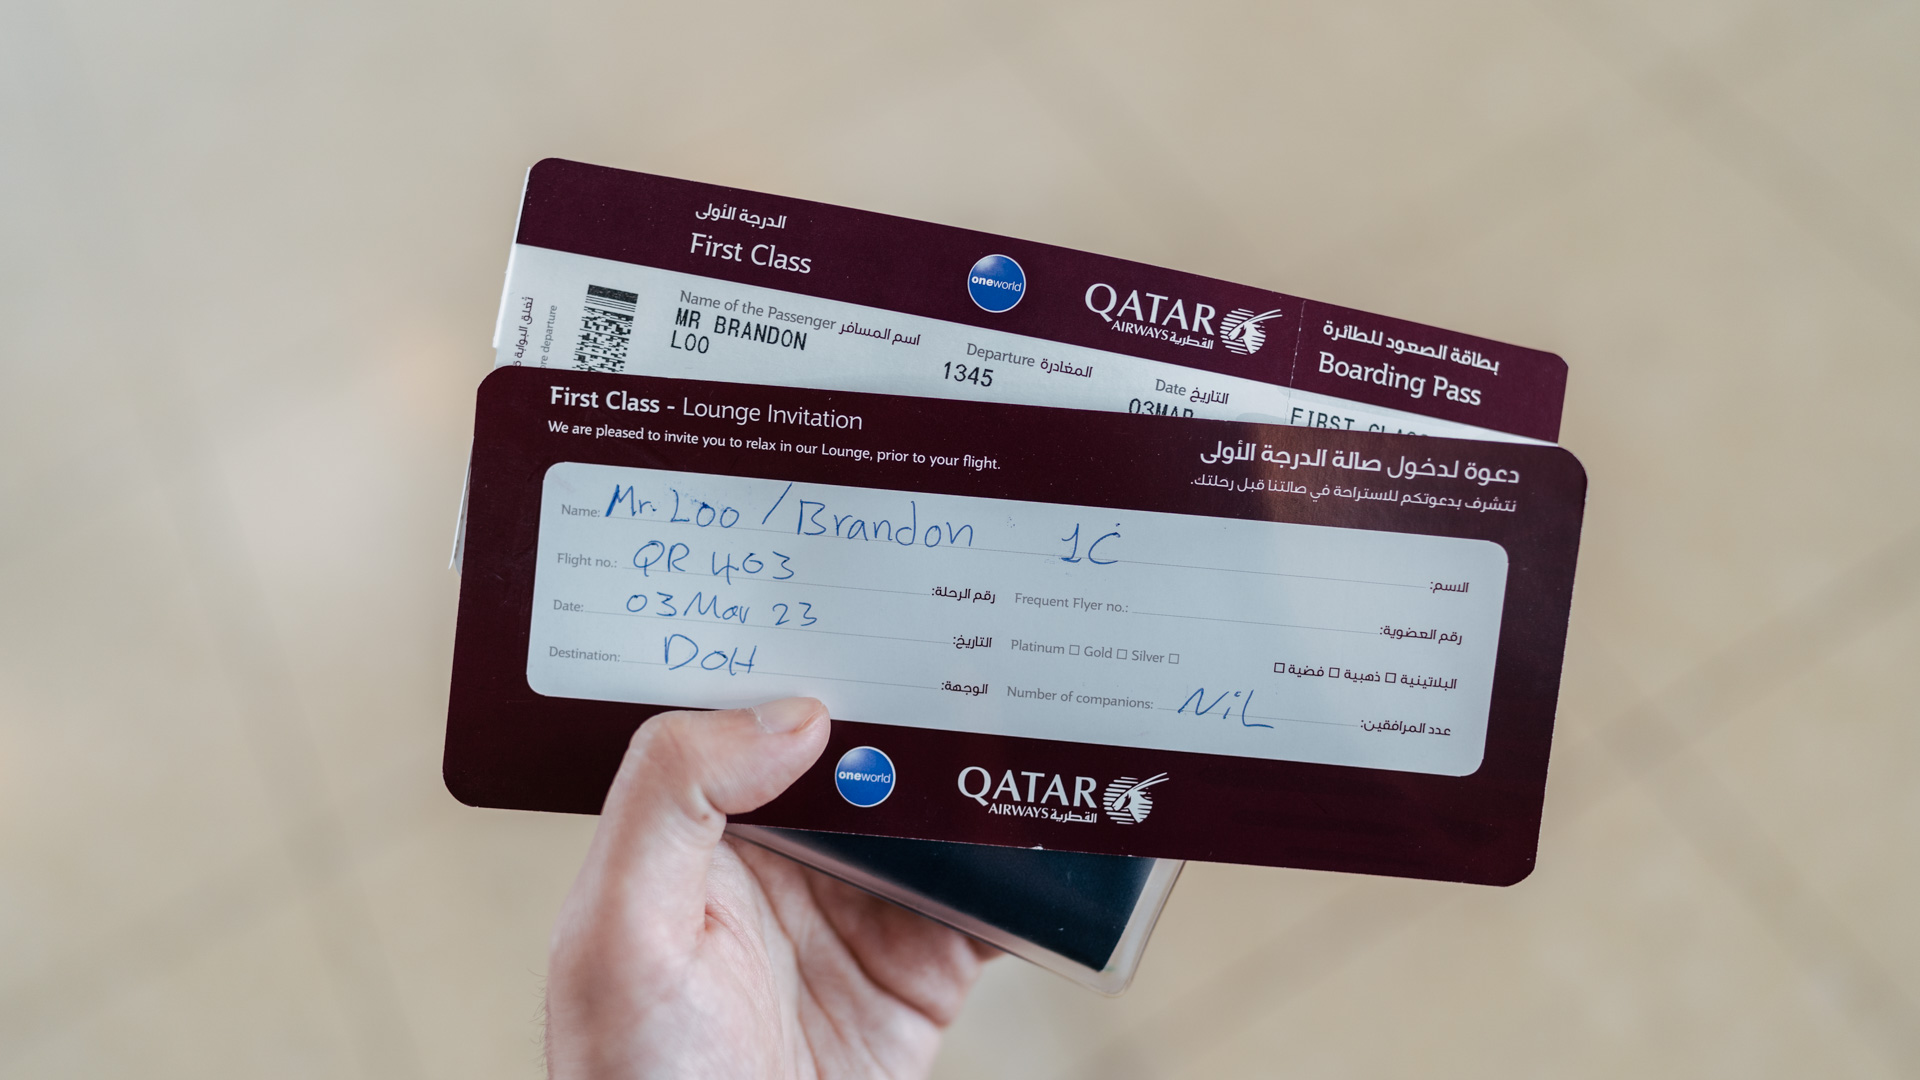 Qatar Airways A320 First Class boarding pass.